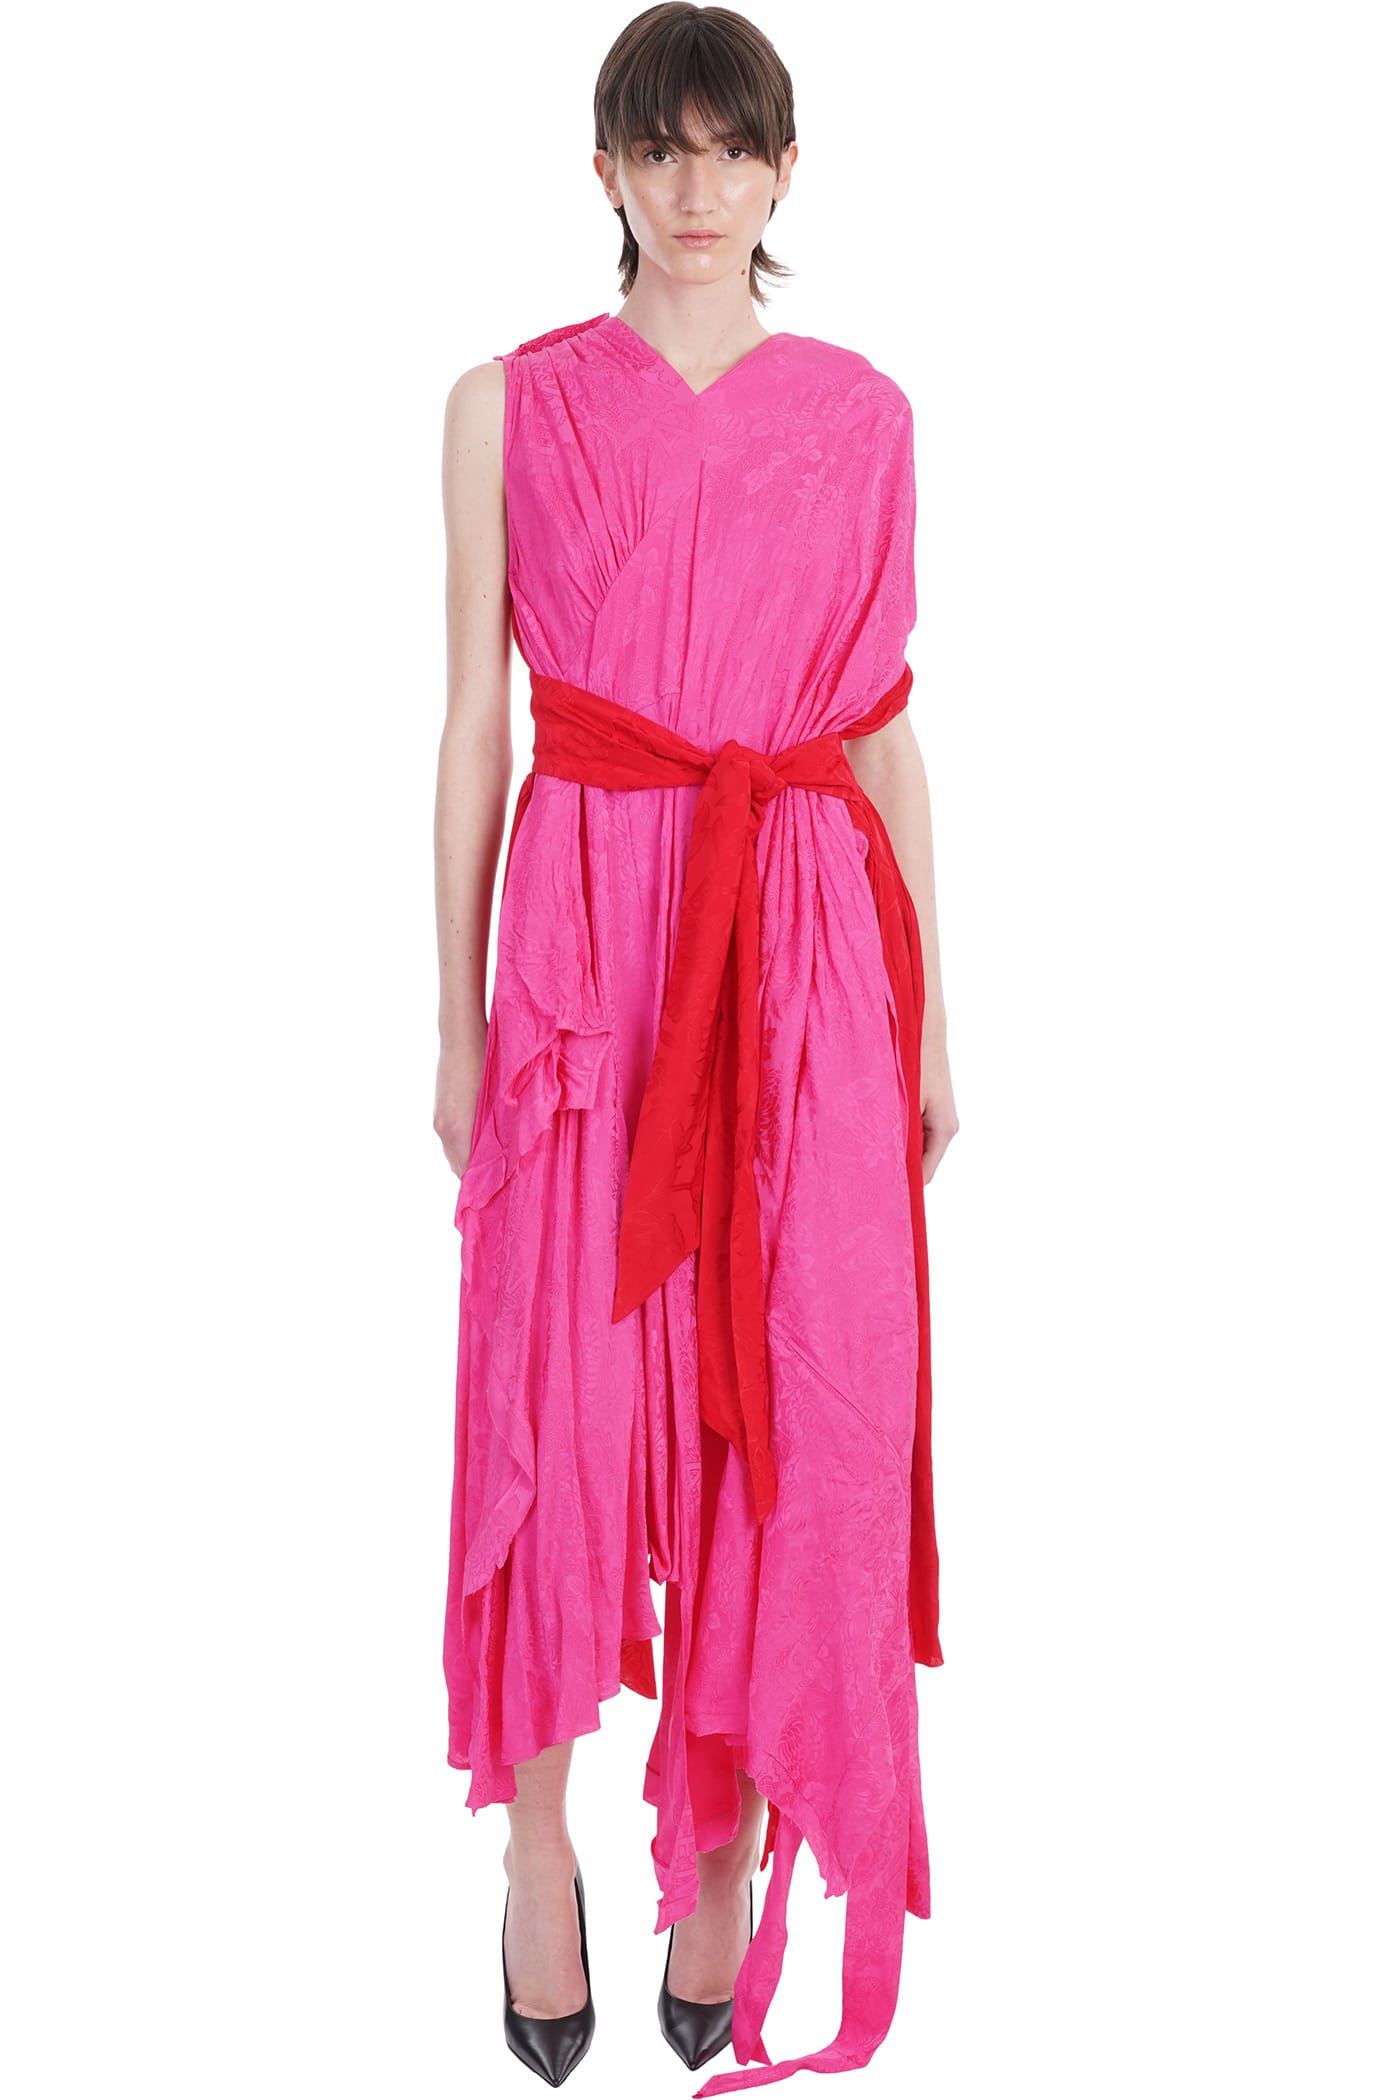 Balenciaga Dress In Rose-pink Viscose